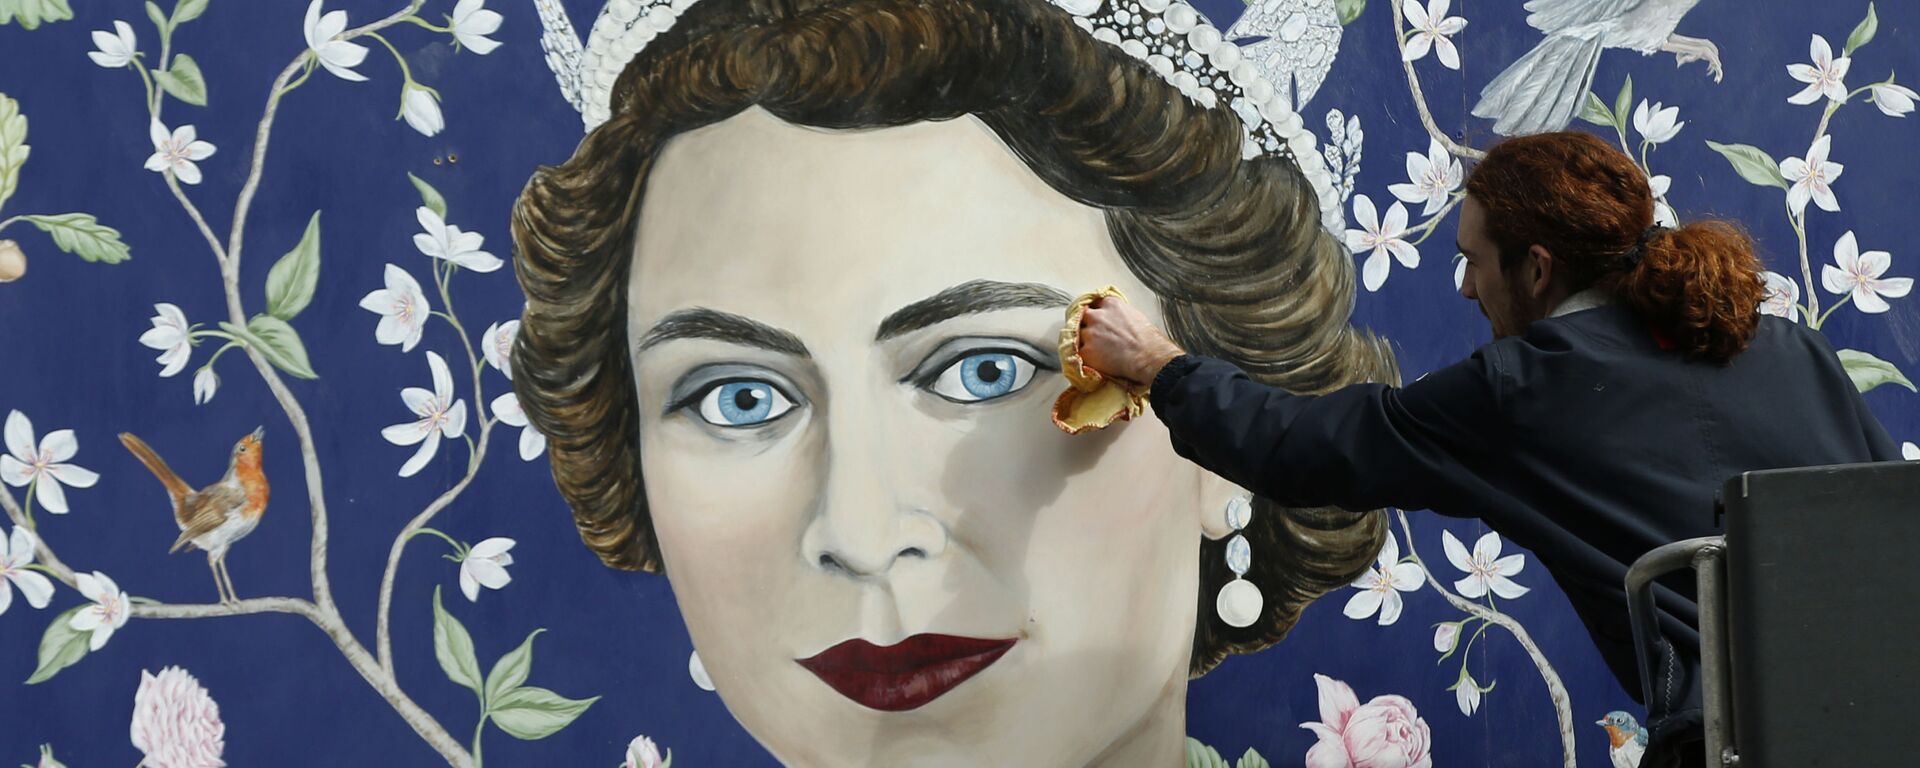  Рабочие устанавливают фреску с изображением королевы Великобритании Елизаветы II в центре Лондона - Sputnik Молдова, 1920, 21.04.2021